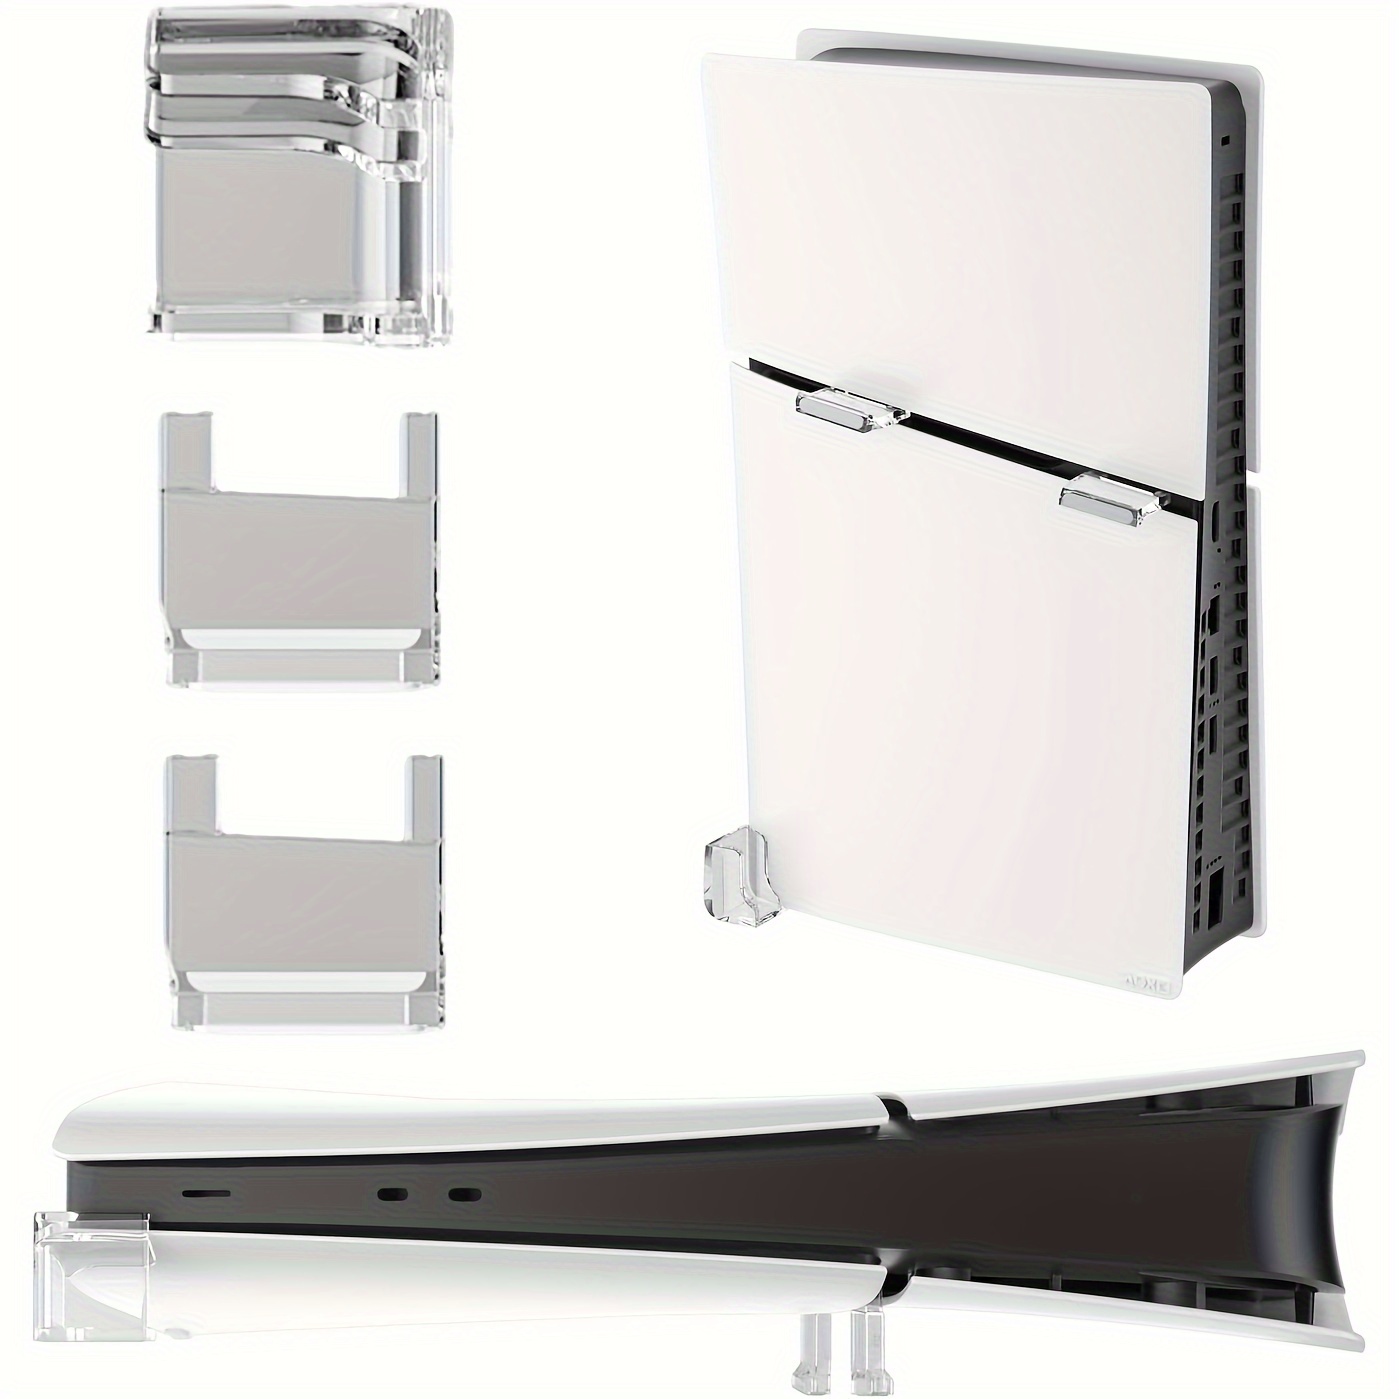 Soporte horizontal delgado Ps5, soporte base de accesorios delgados Ps5  compatible con las ediciones digitales y discos de consola delgados Ps5,  diseño minimalista